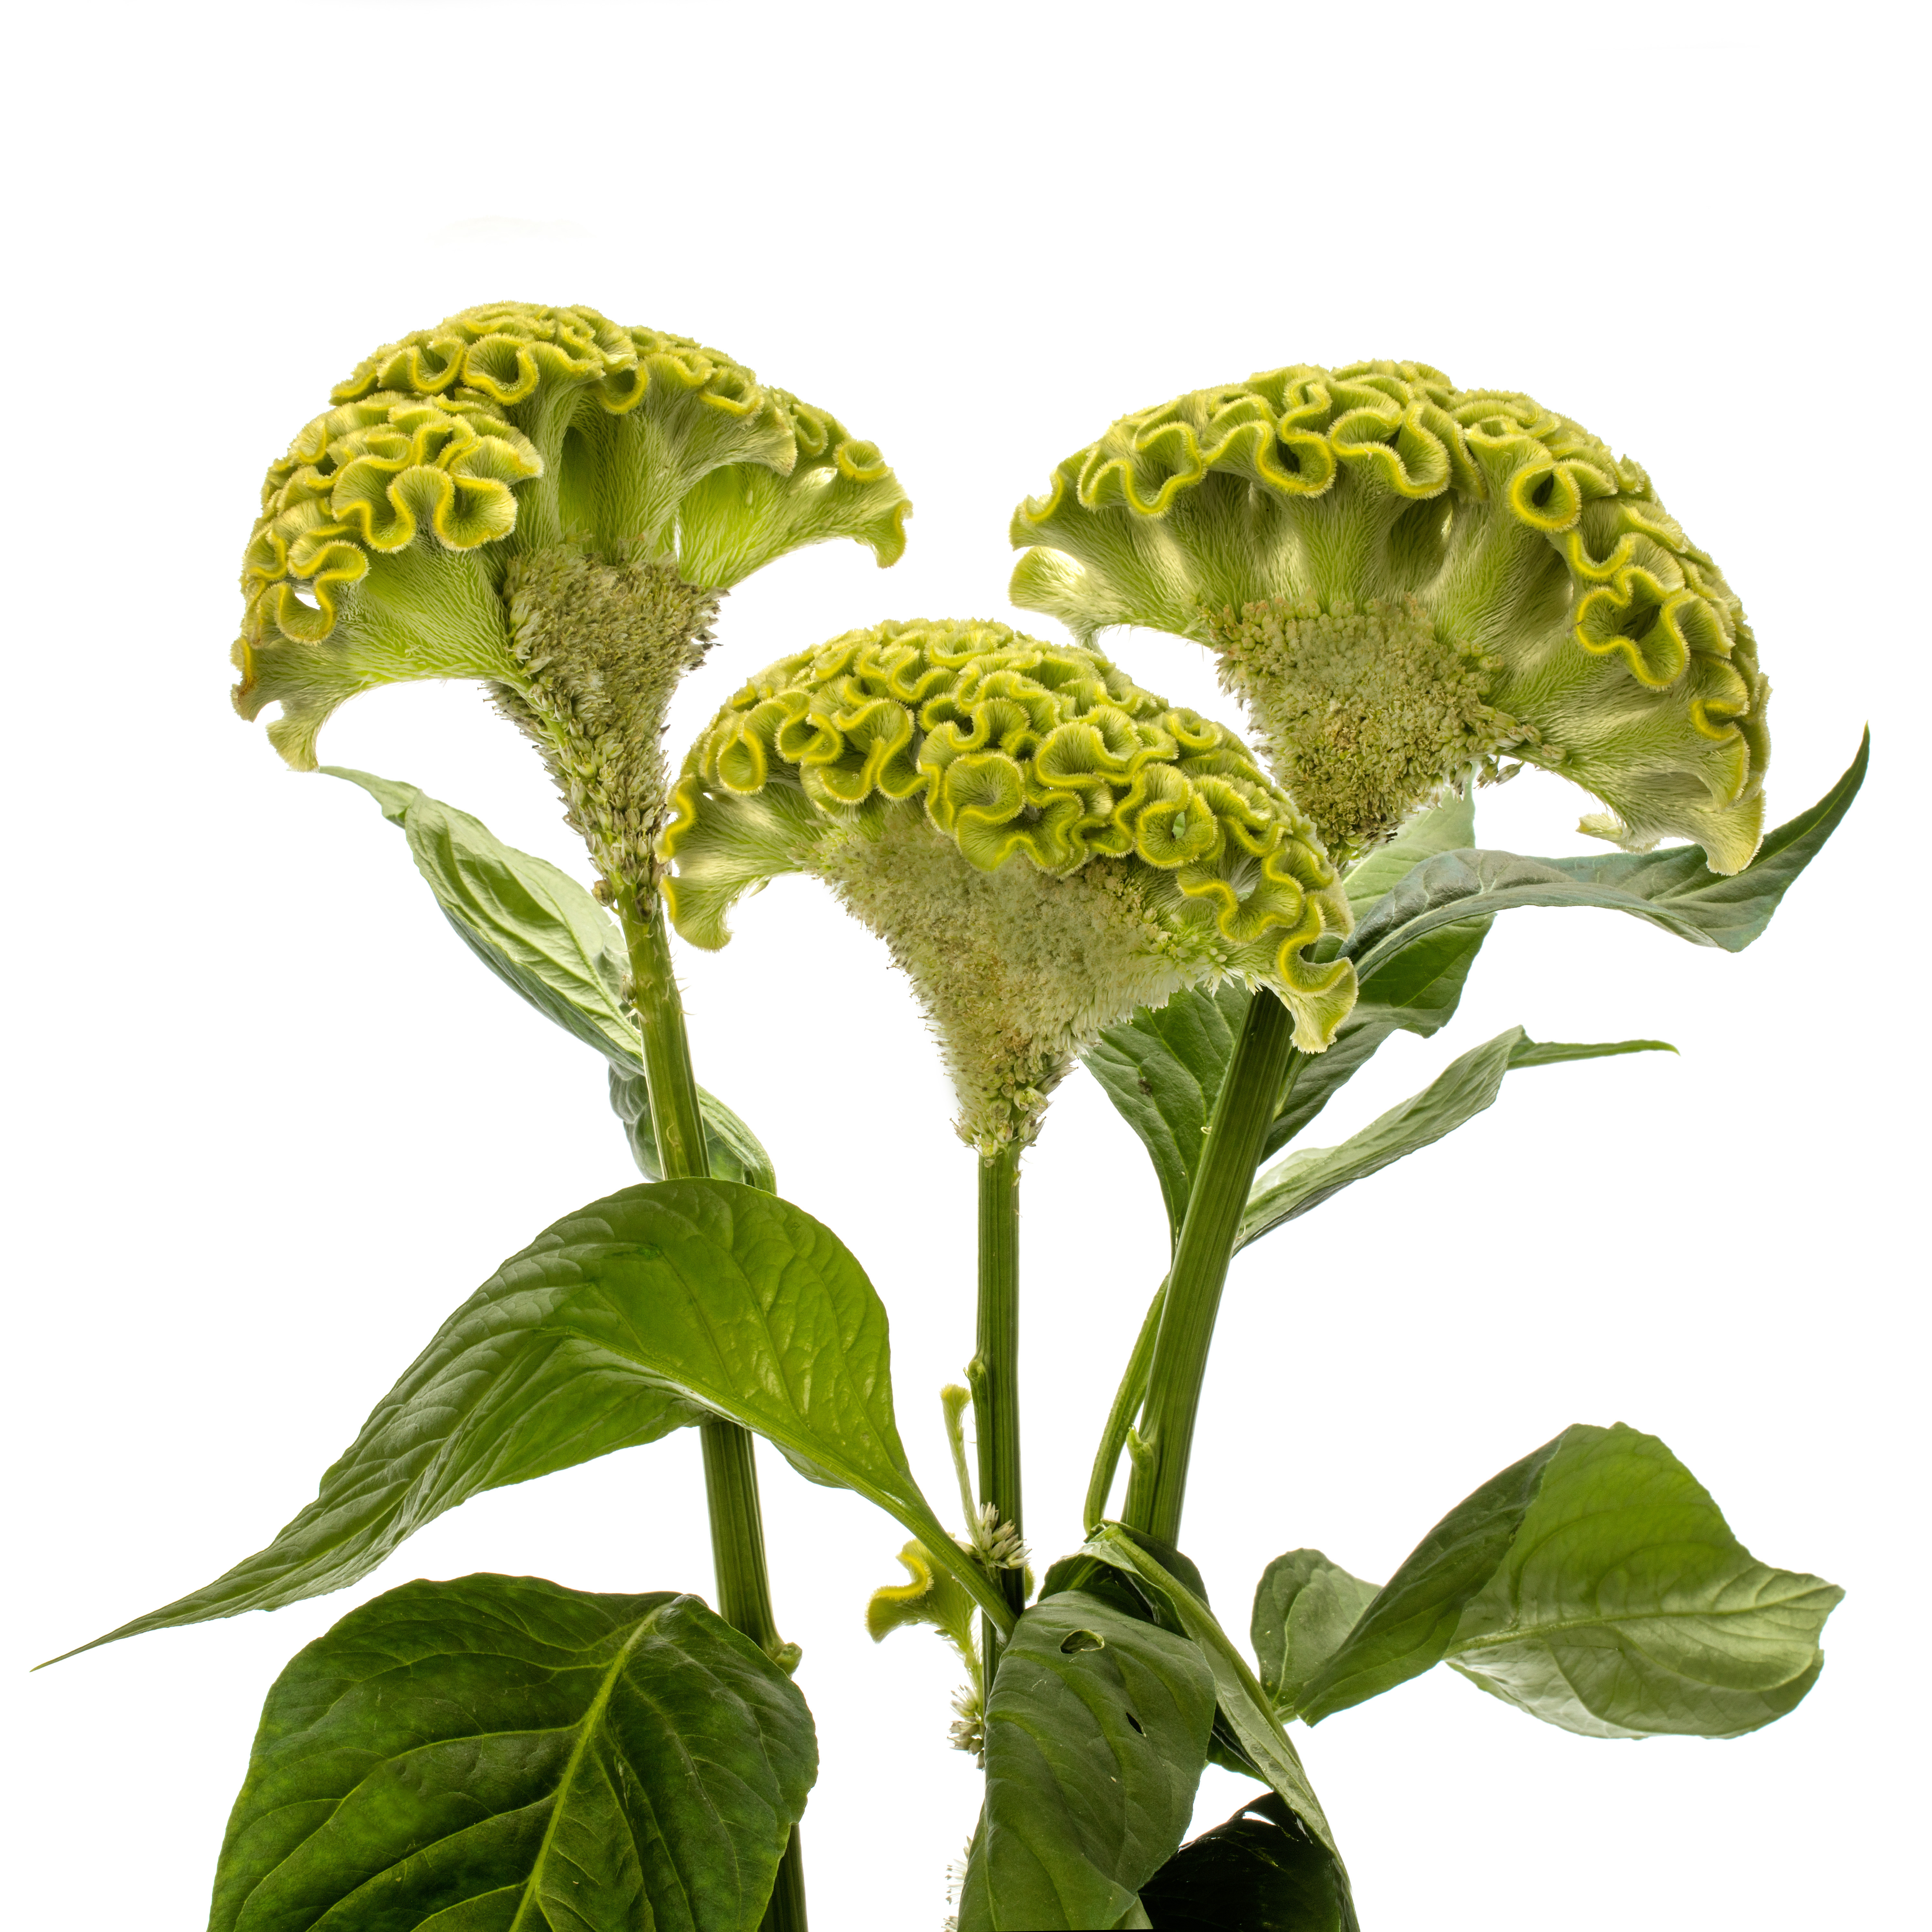 Celosia argentea cristata Act Verda, grün